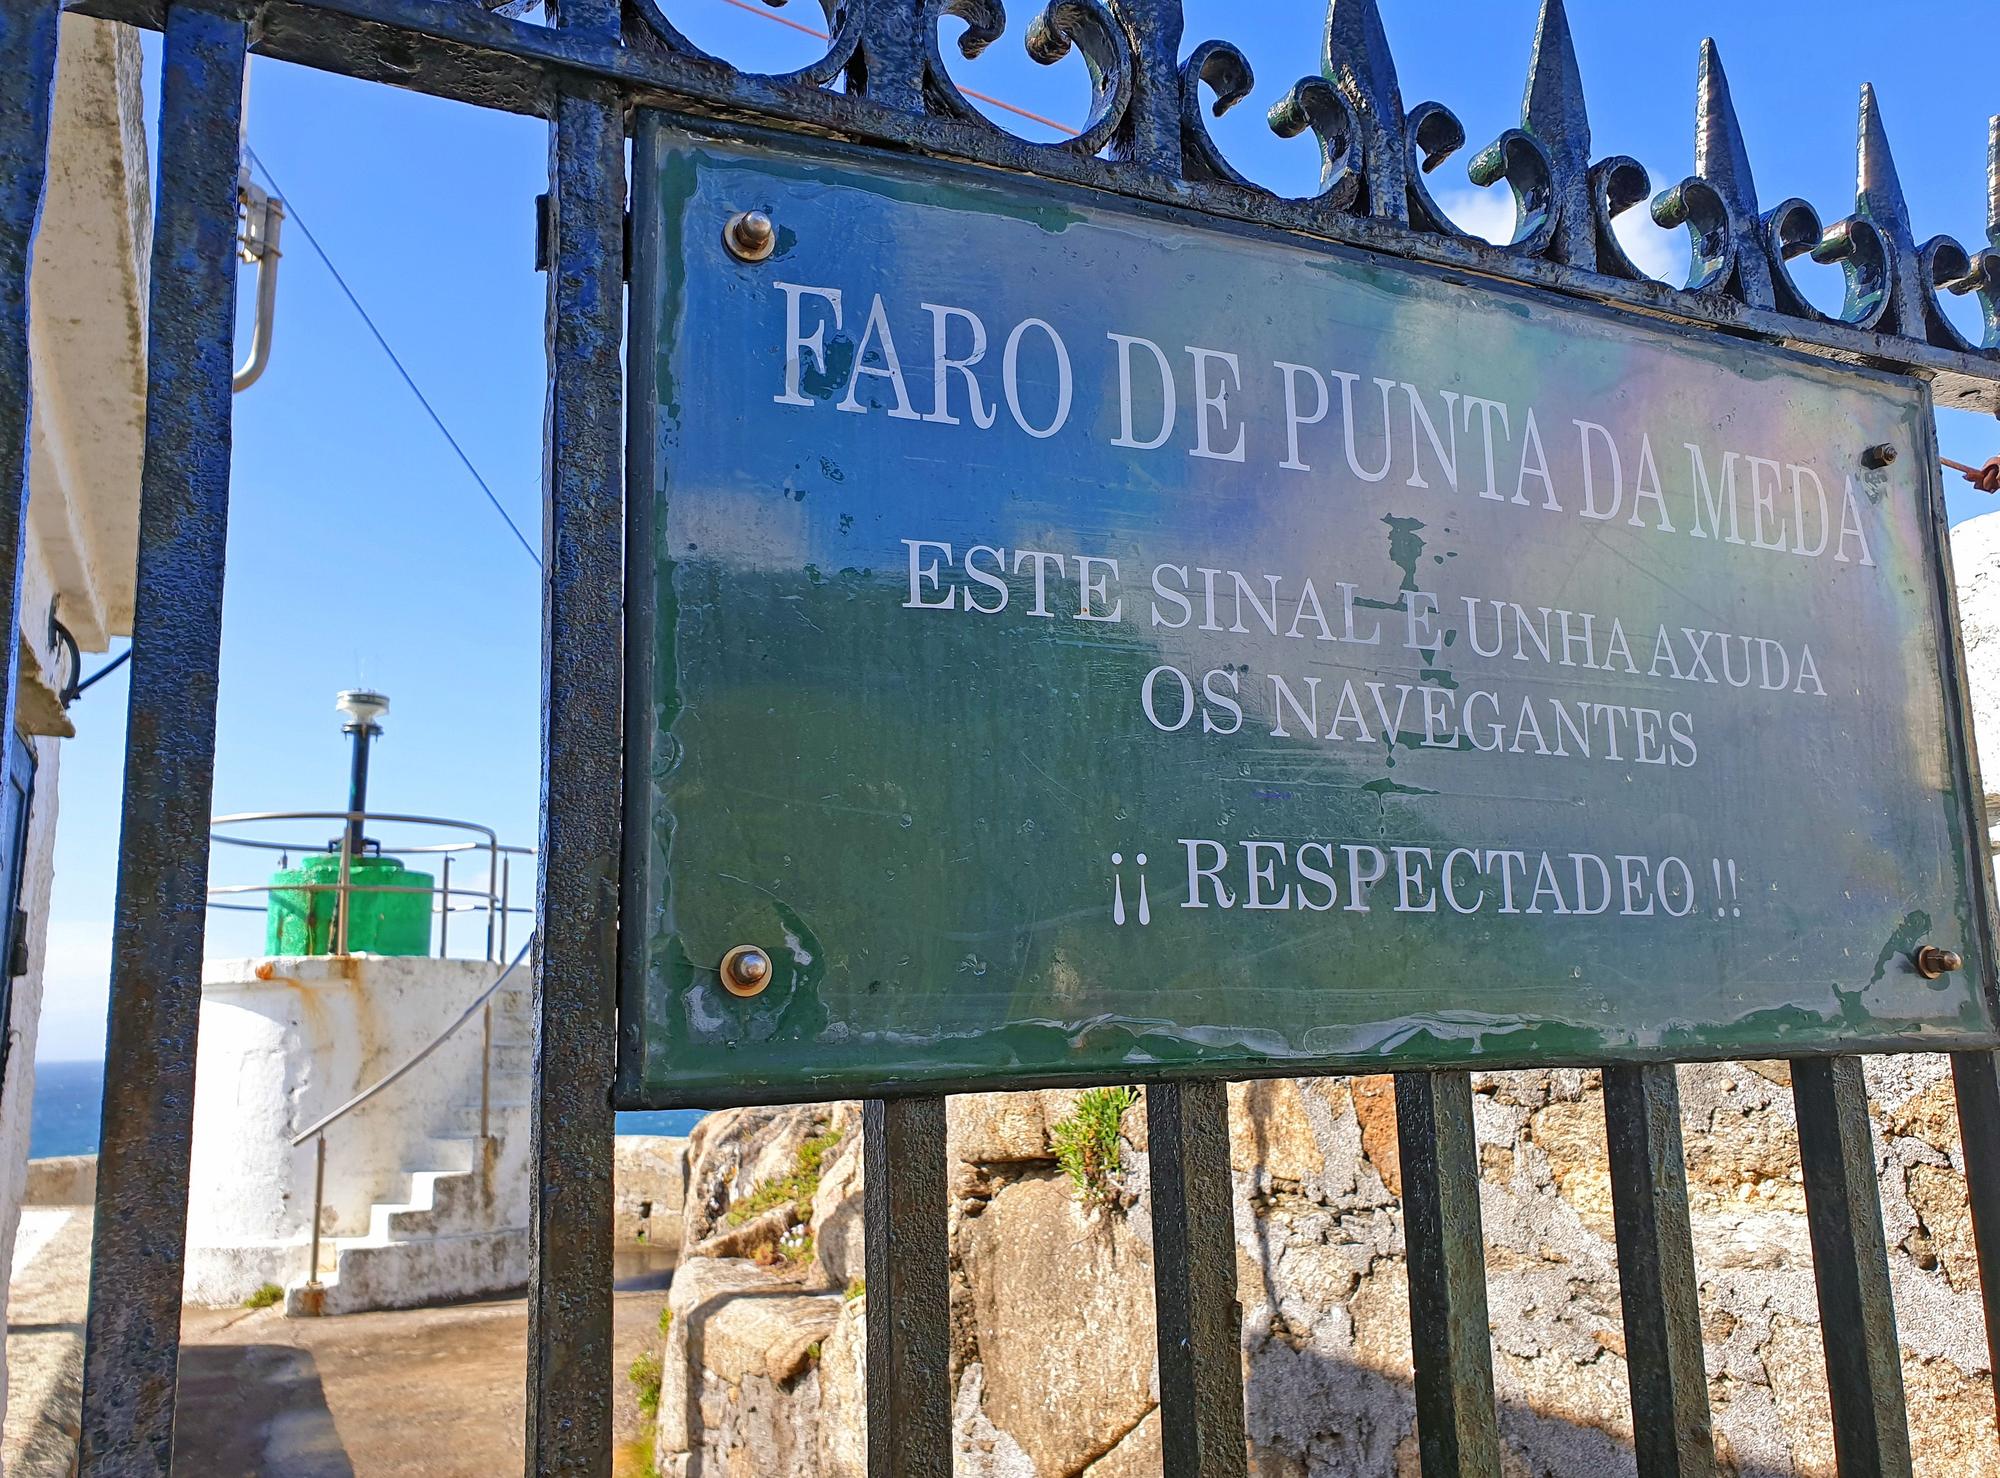 Cañones, un faro, acantilados y petroglifos: la ruta que descubre los encantos de Monteferro